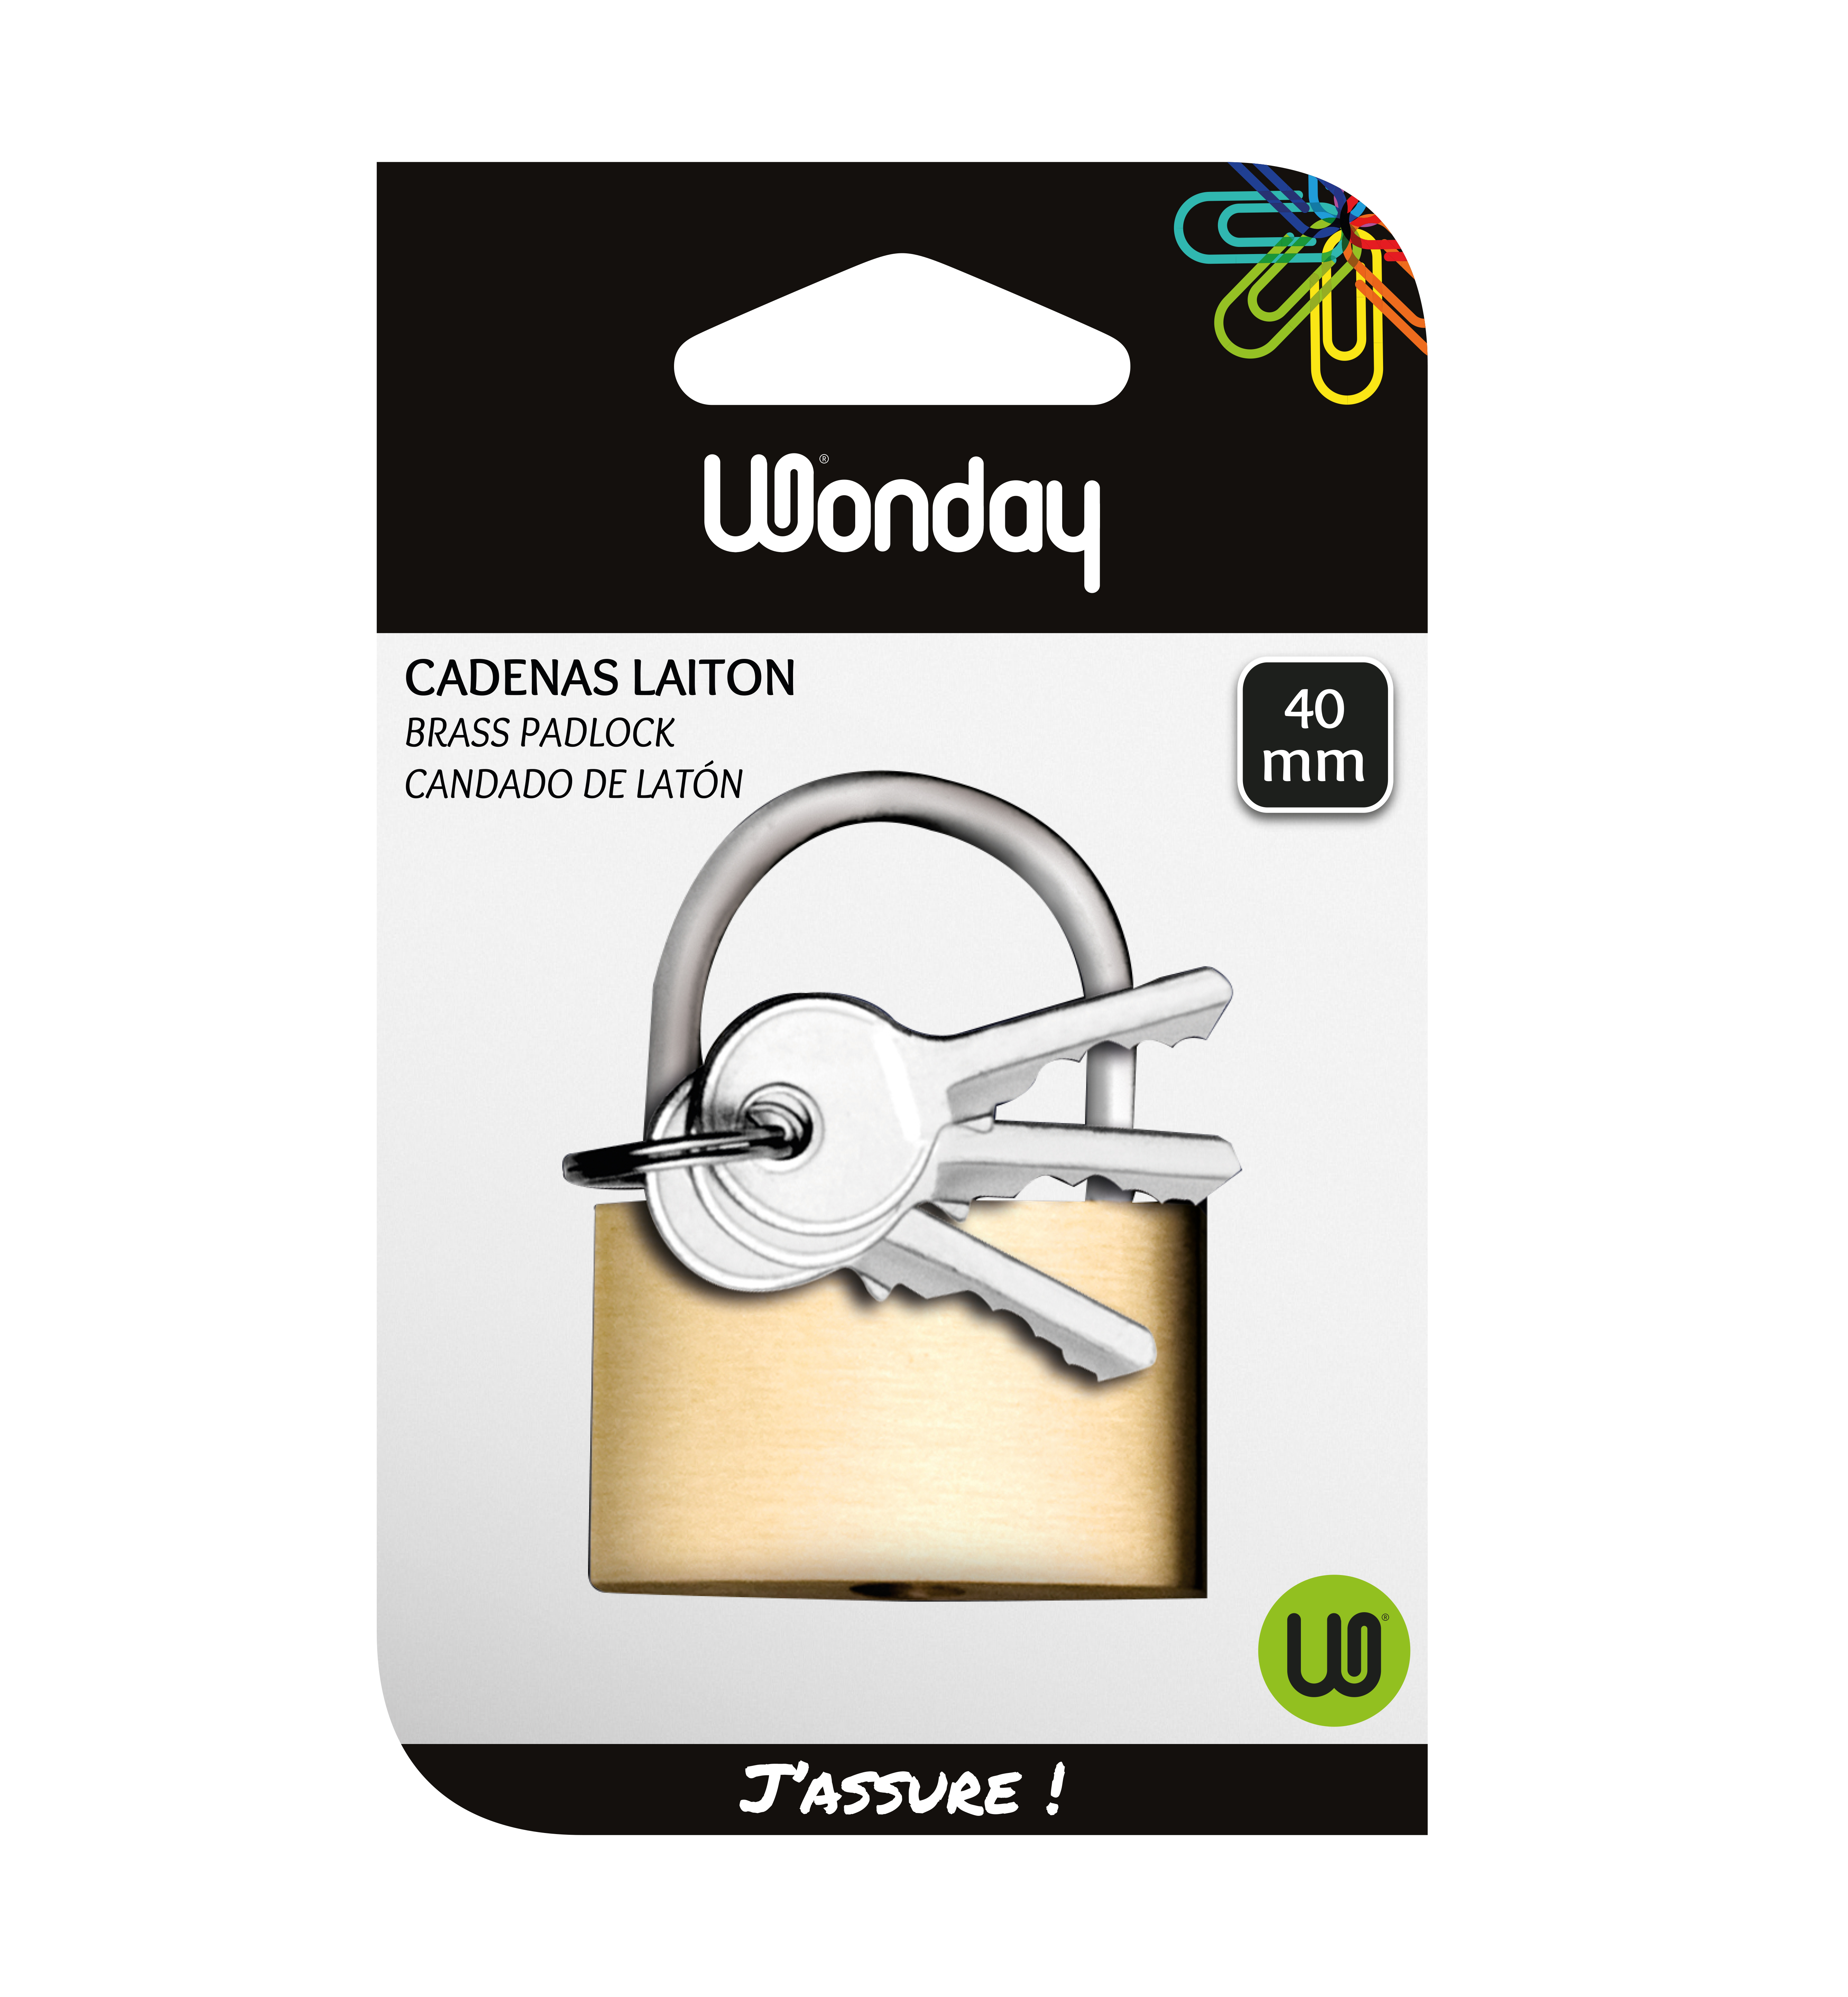 Wonday - Cadenas laiton à clé - 40 mm